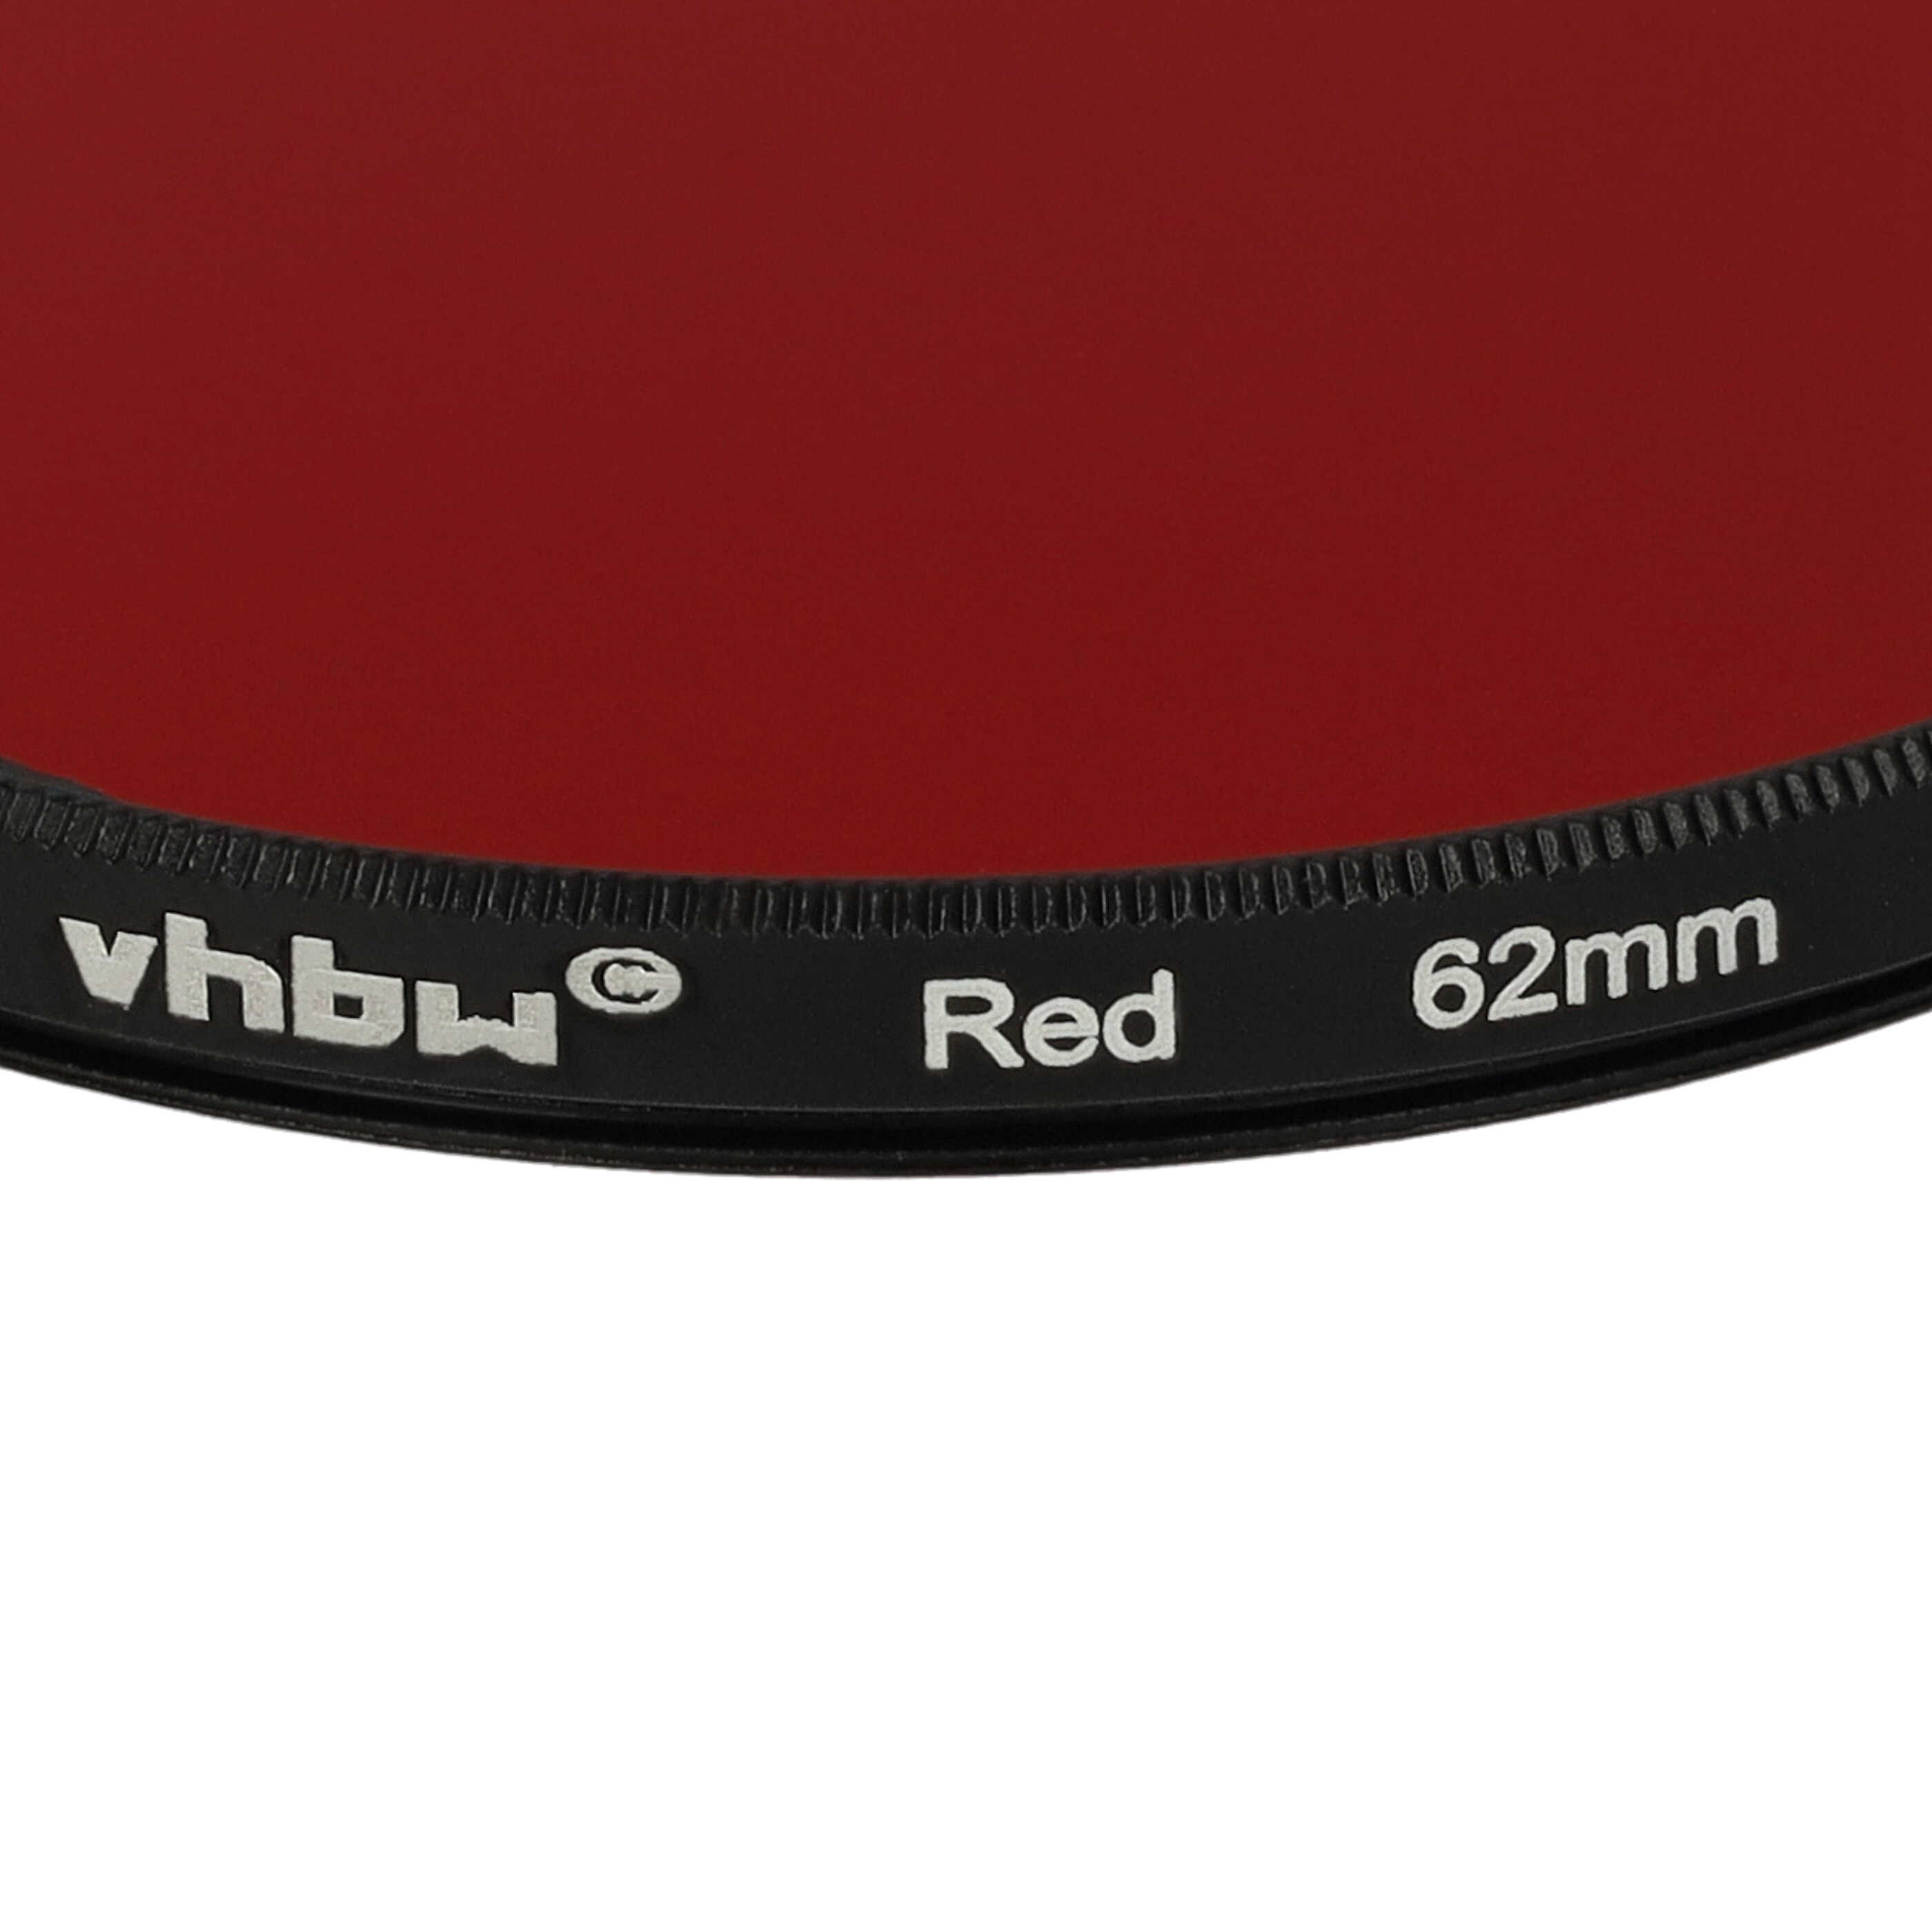 Filtro colorato per obiettivi fotocamera con filettatura da 62 mm - filtro rosso